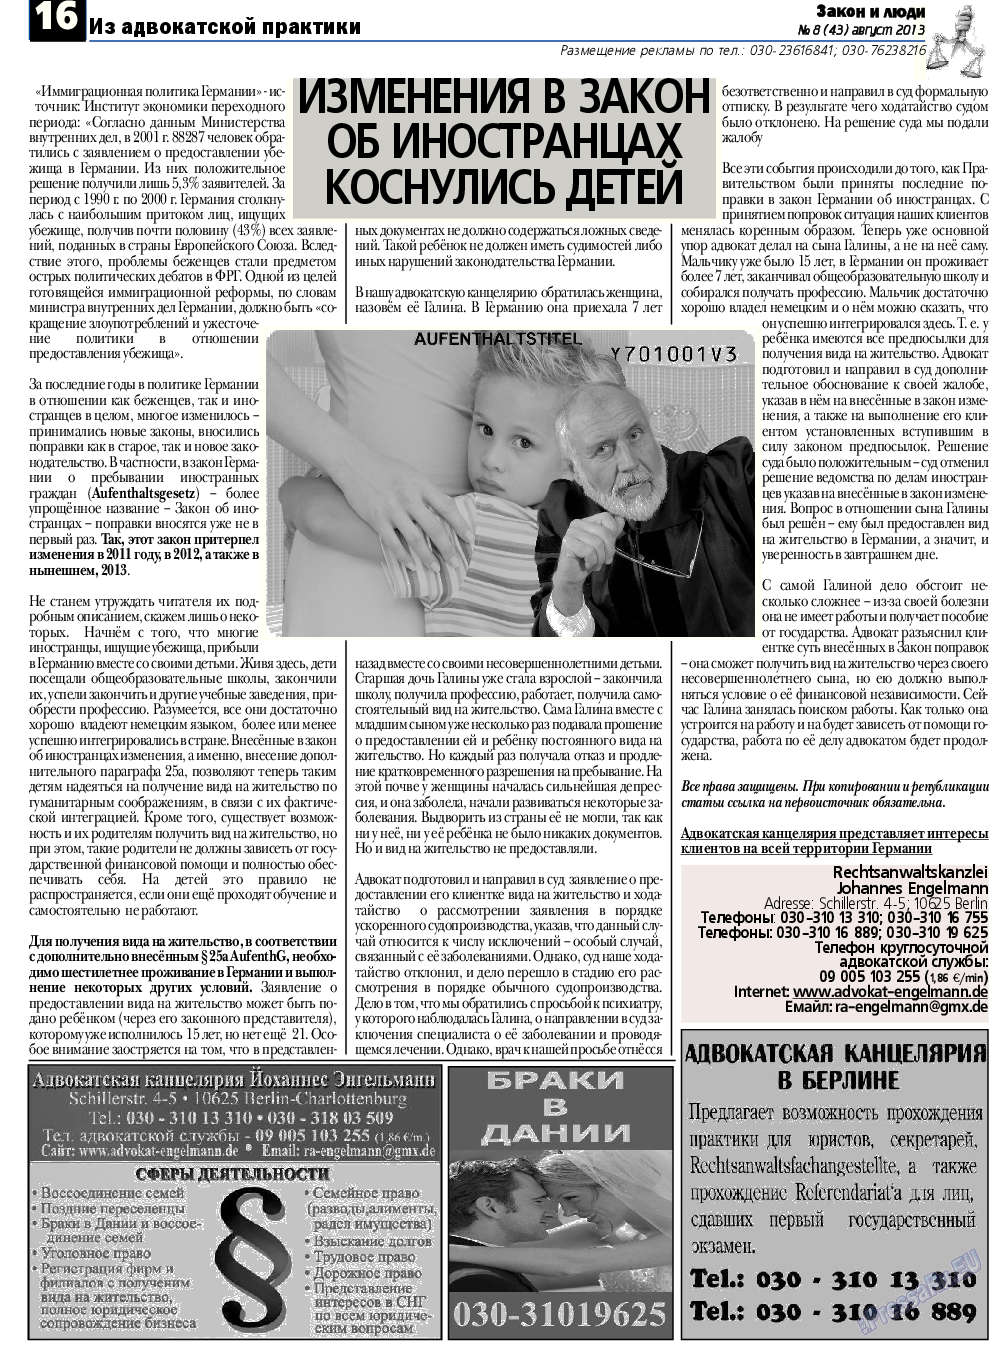 Закон и люди, газета. 2013 №8 стр.16